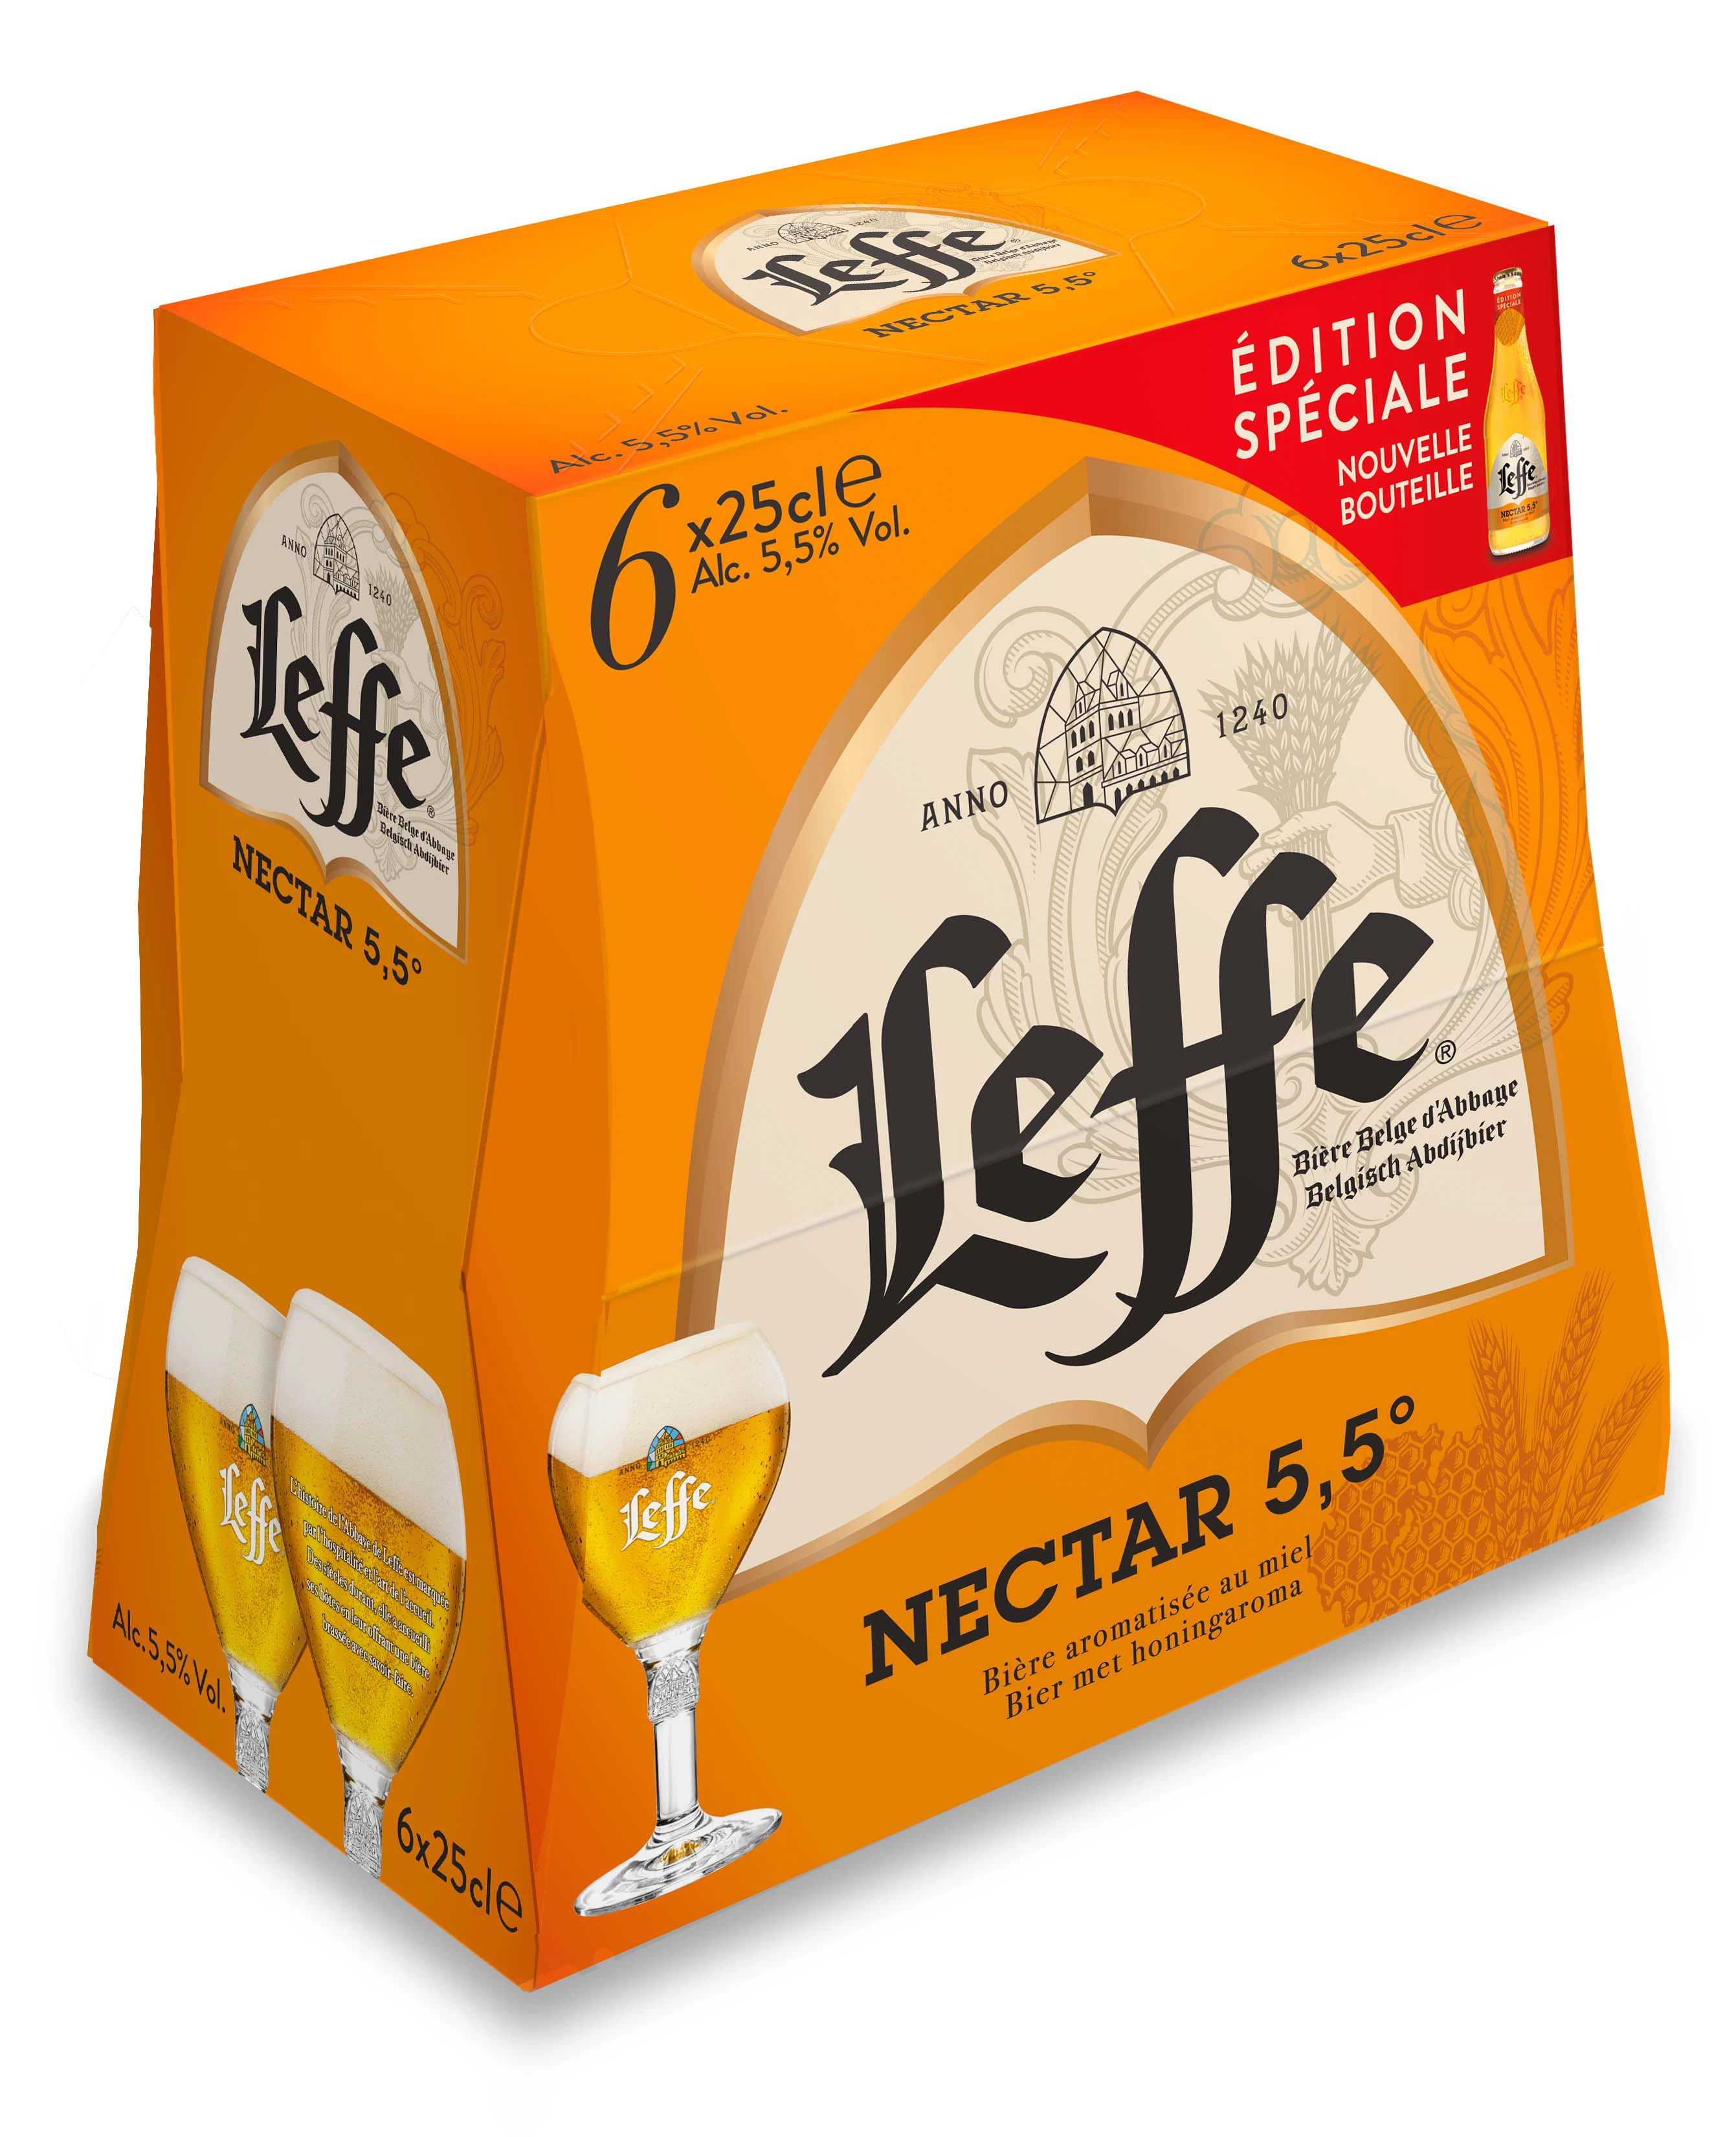 Leffe Nectar 6x25cl 5d5